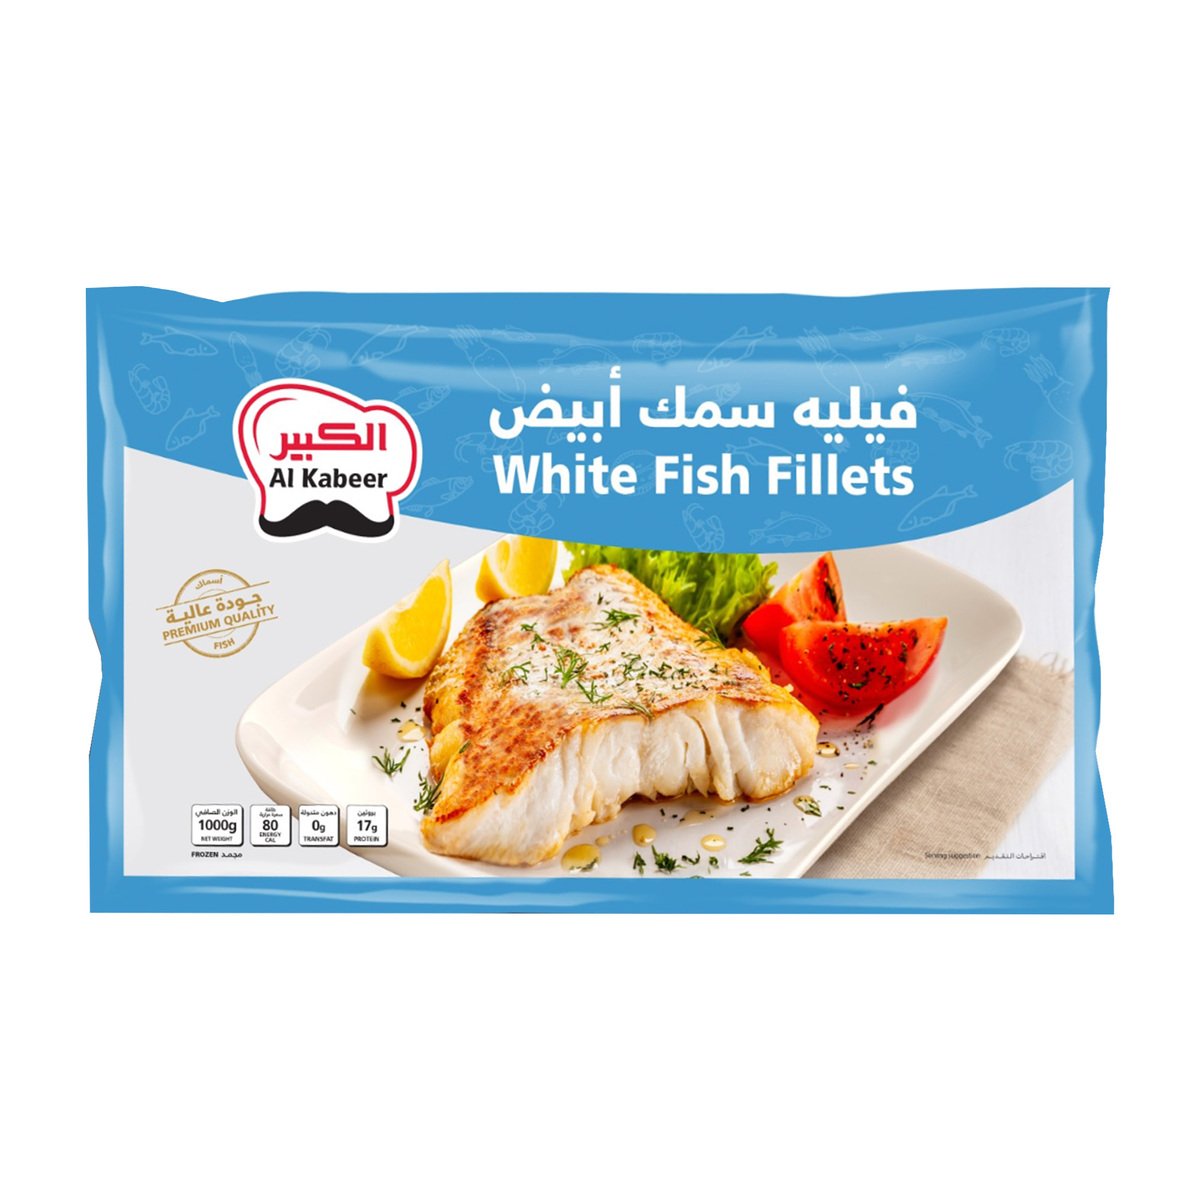 Buy Al Kabeer White Fish Fillets 1 kg Online at Best Price | Fish Fingers & Steak | Lulu KSA in UAE